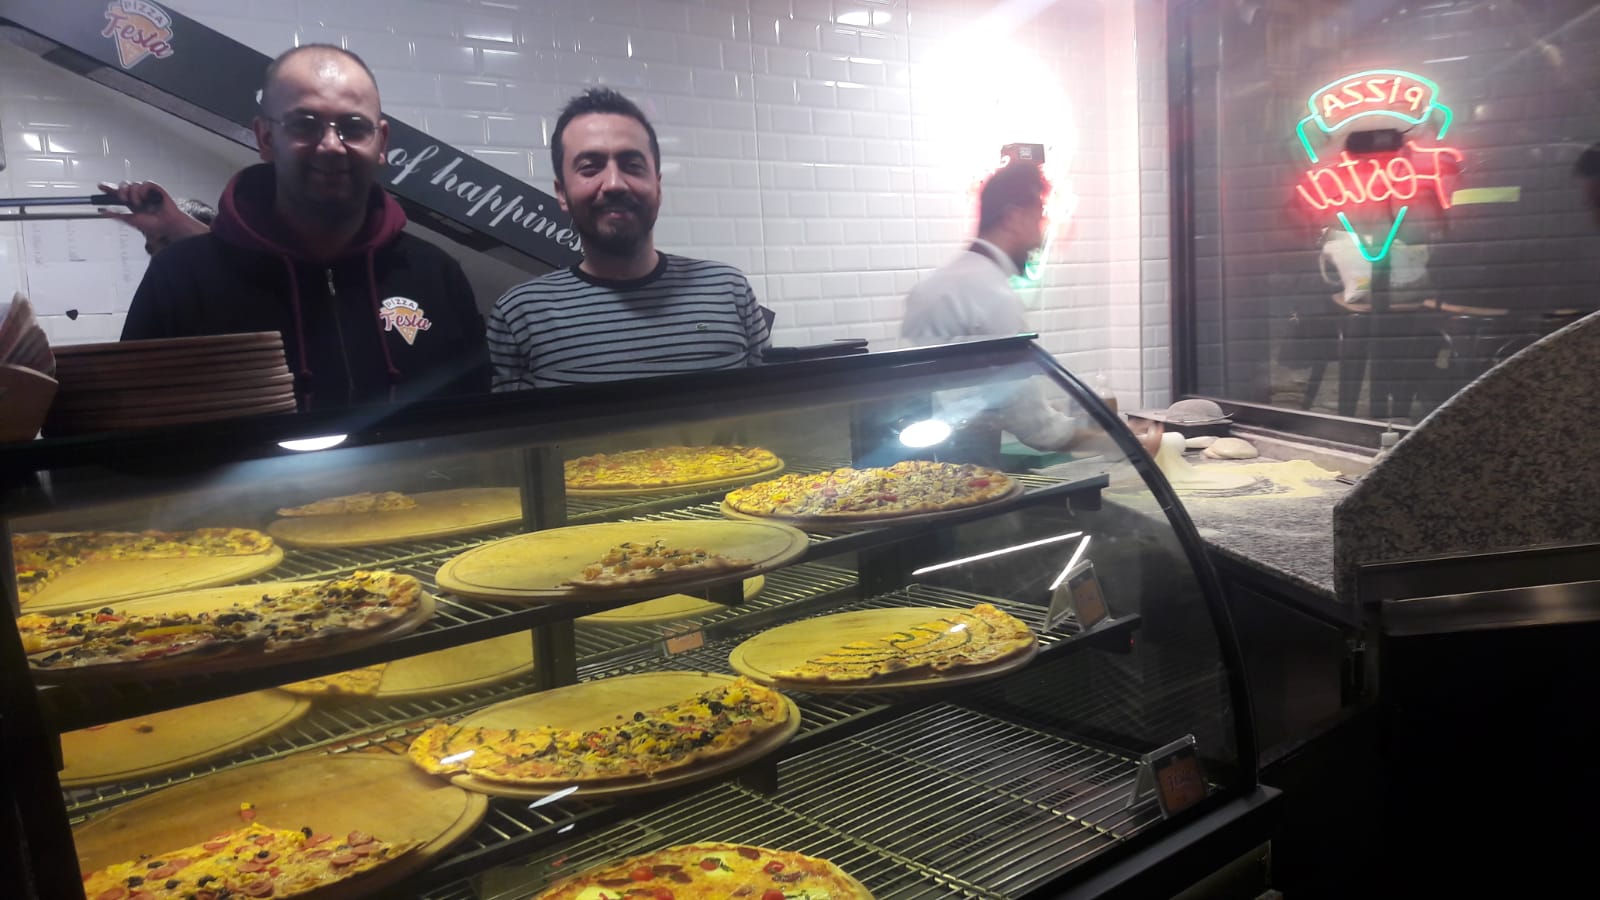 Festa Pizza,. ve üç üniversitelinin marka yaratma girişimi